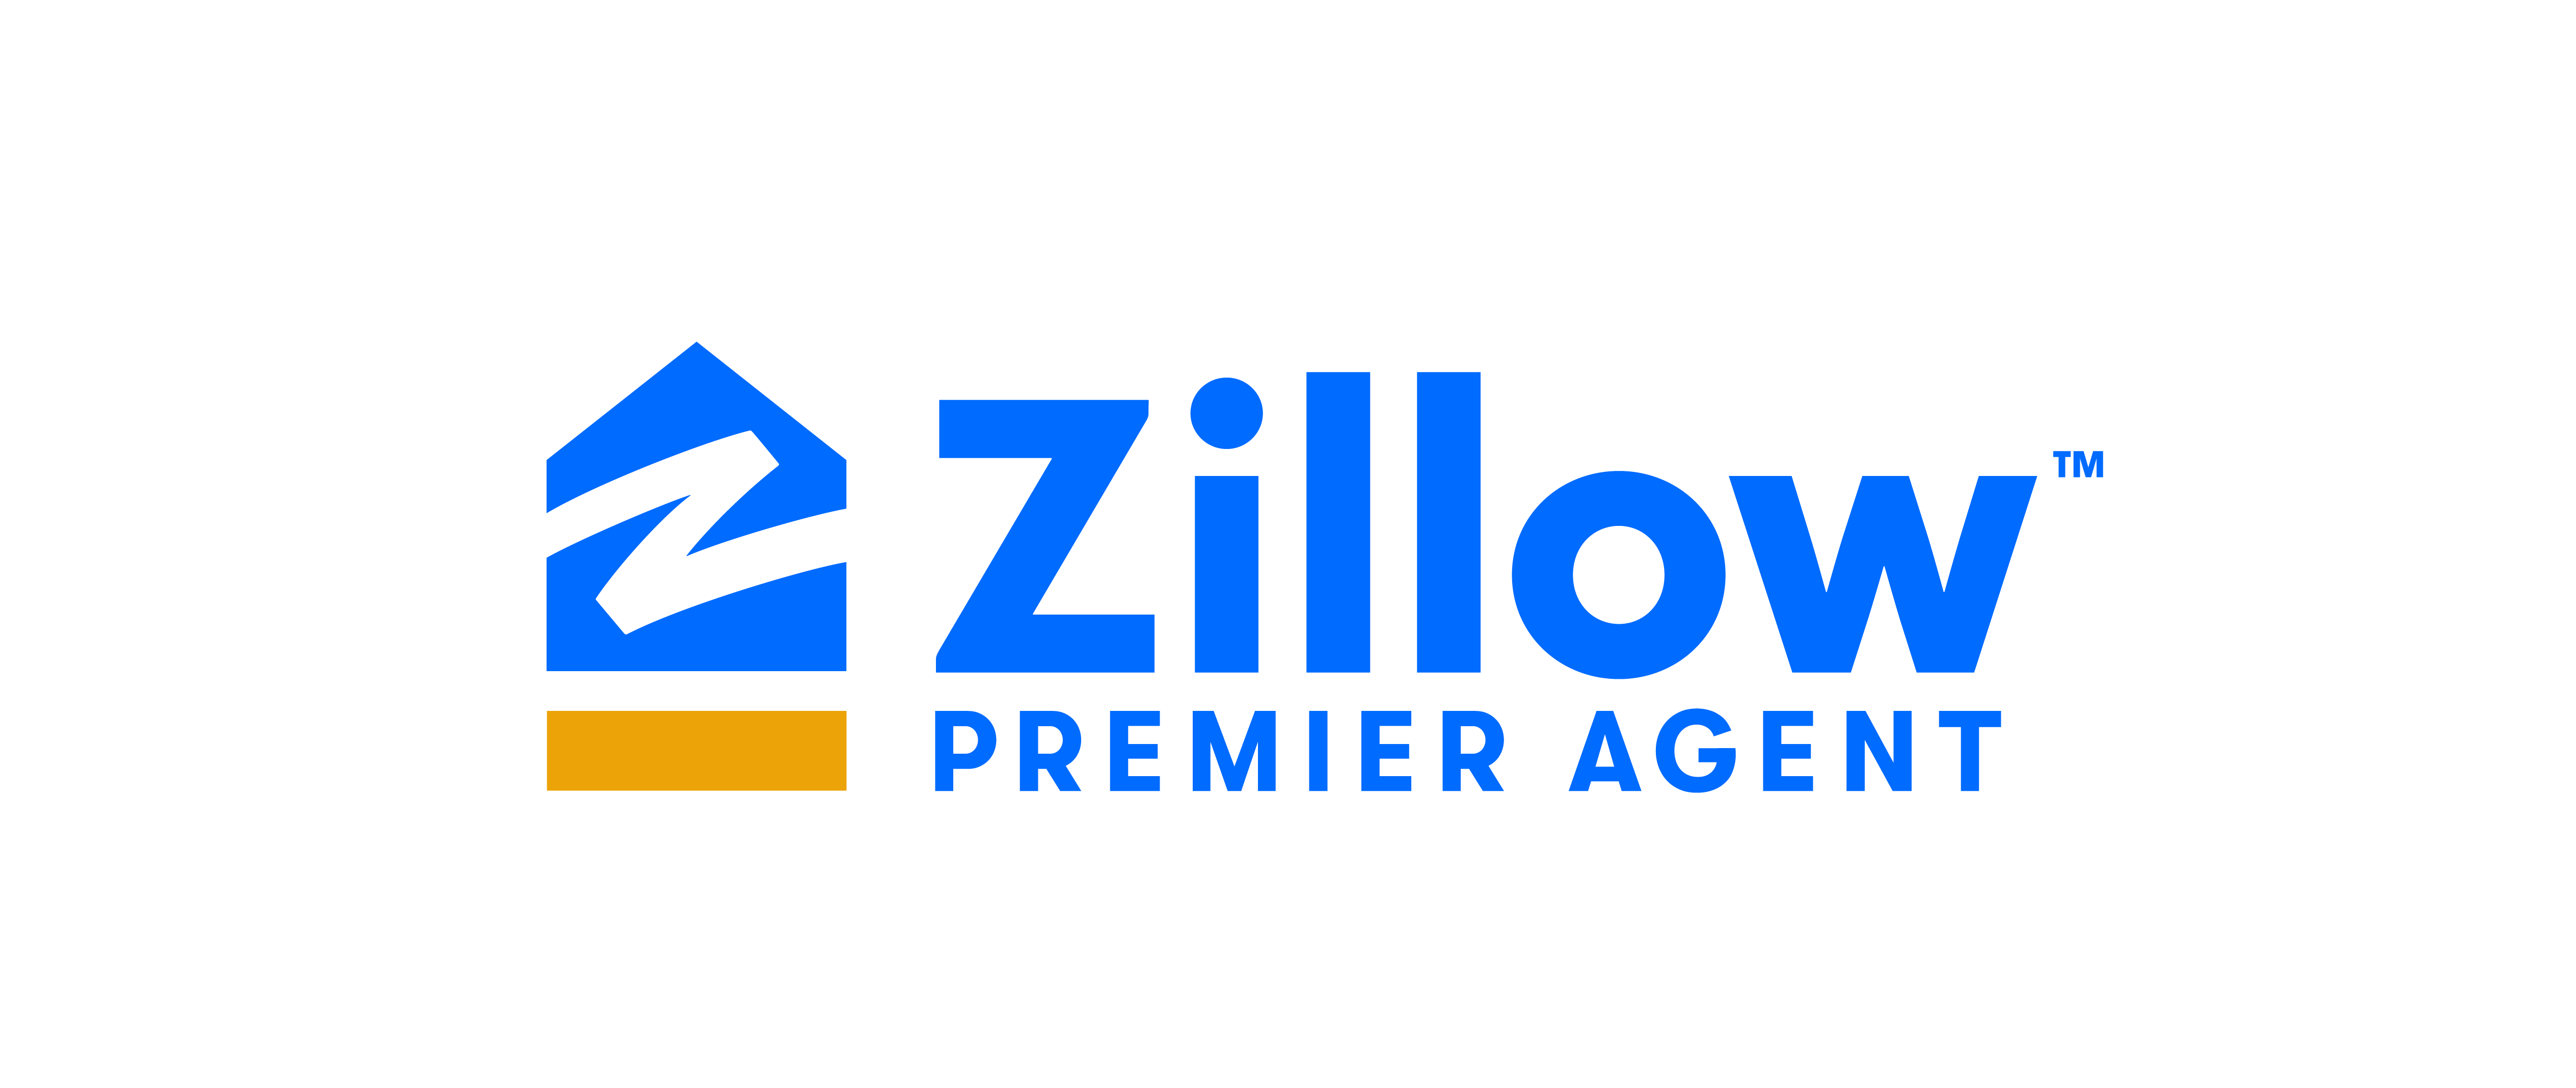 Zillow Premier Agent CRM logo